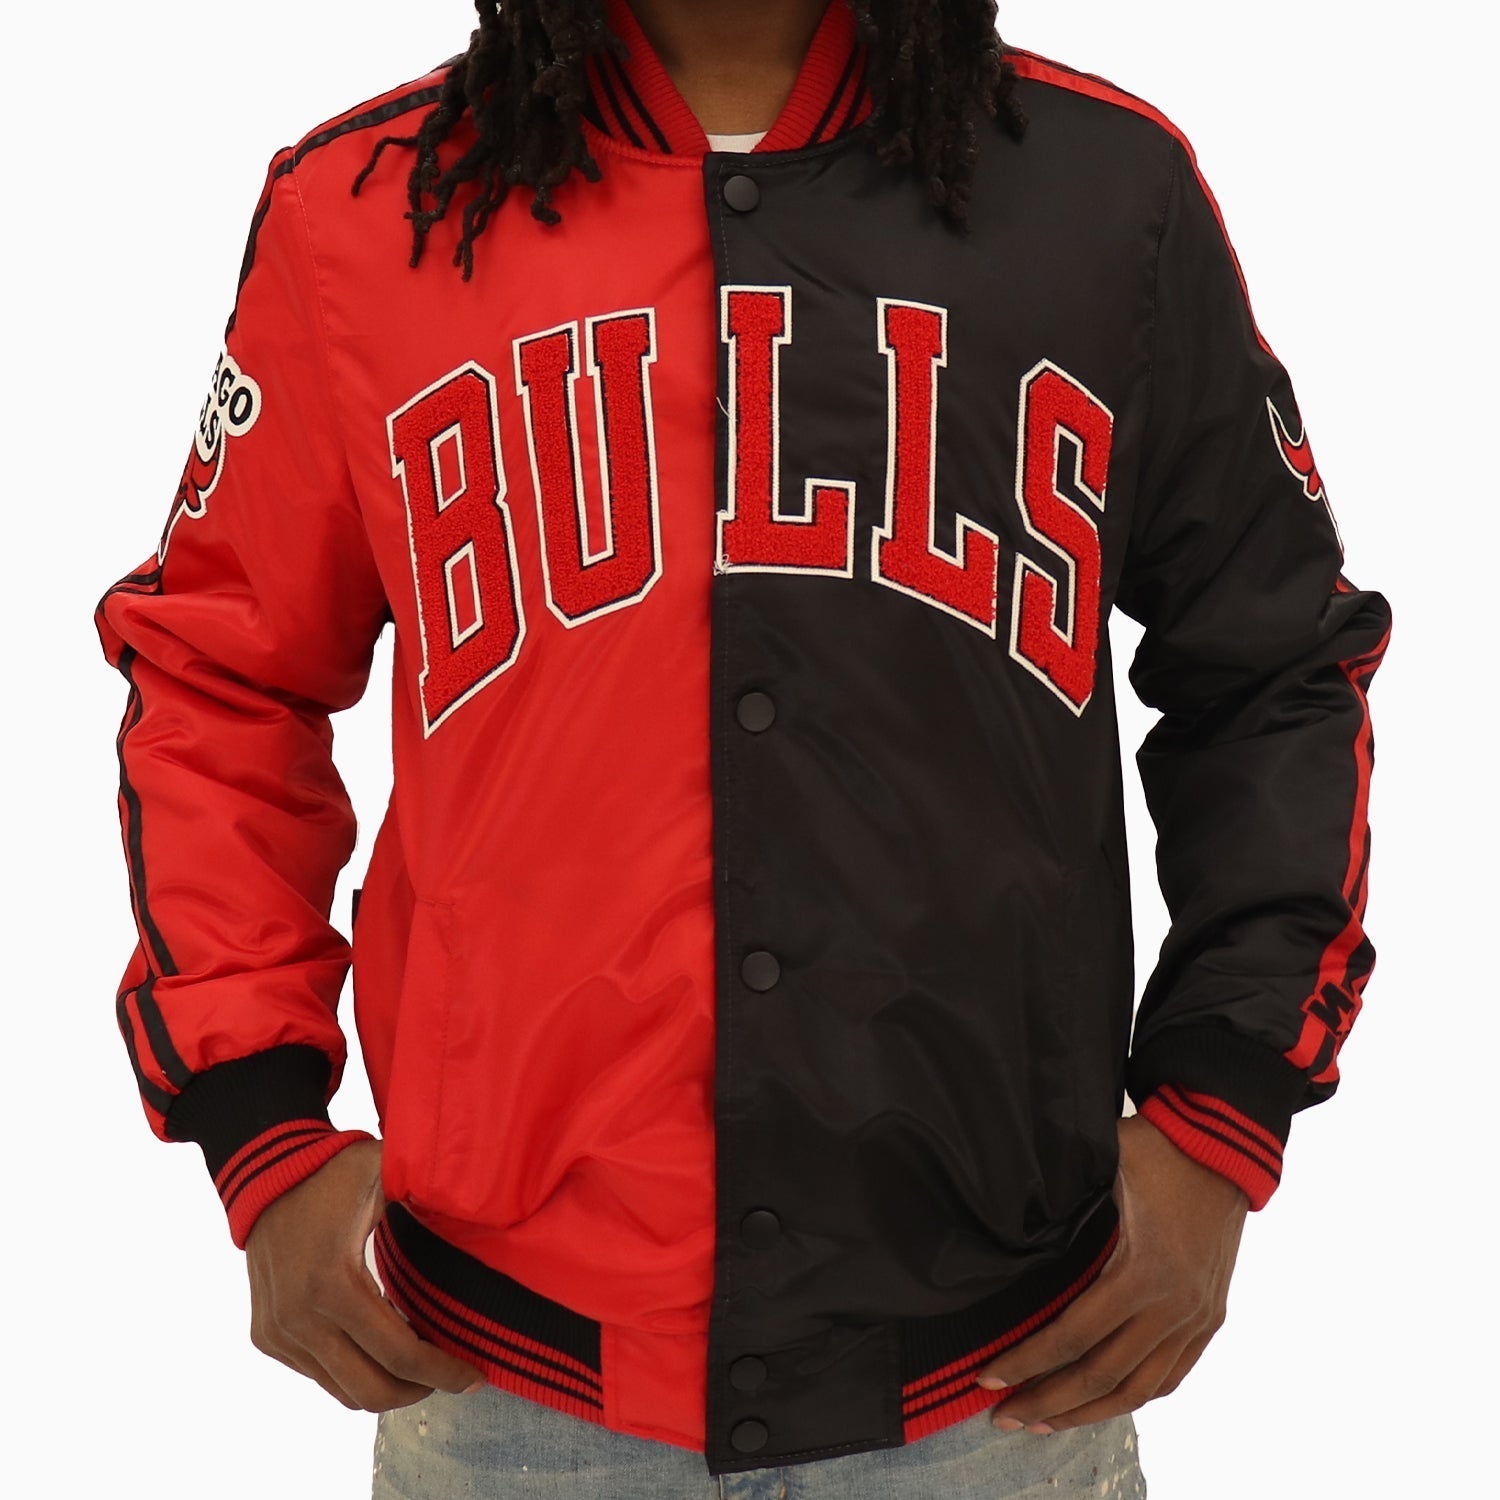 Chicago Bulls Unisex Starter Varsity Red Jacket